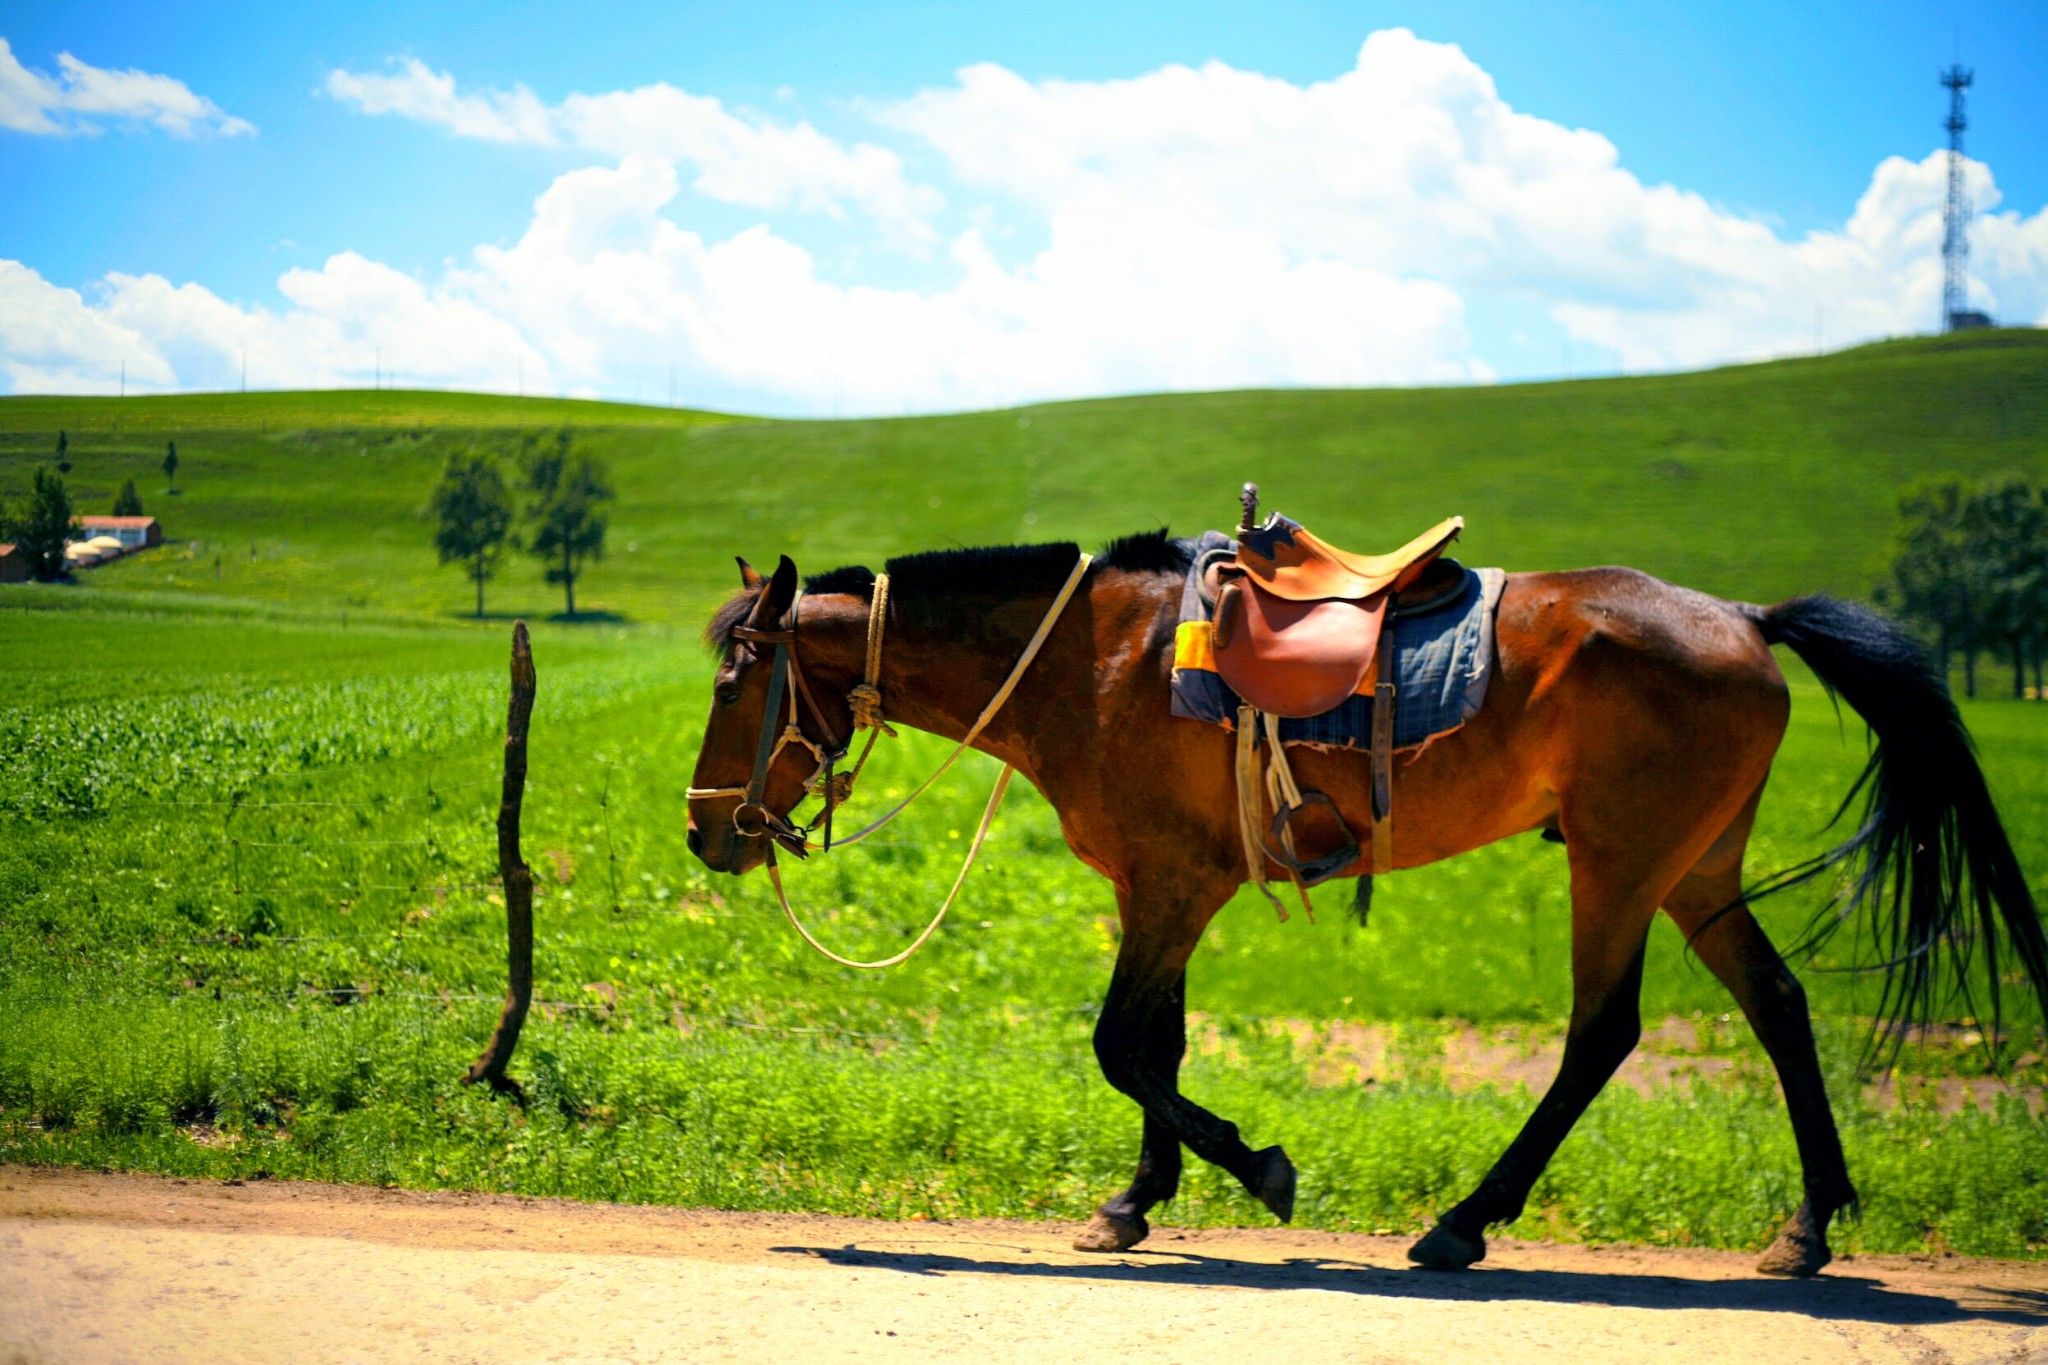 大美草原--骑马。6月17日摄于丰宁坝上草原 - 花粉随手拍 花粉俱乐部